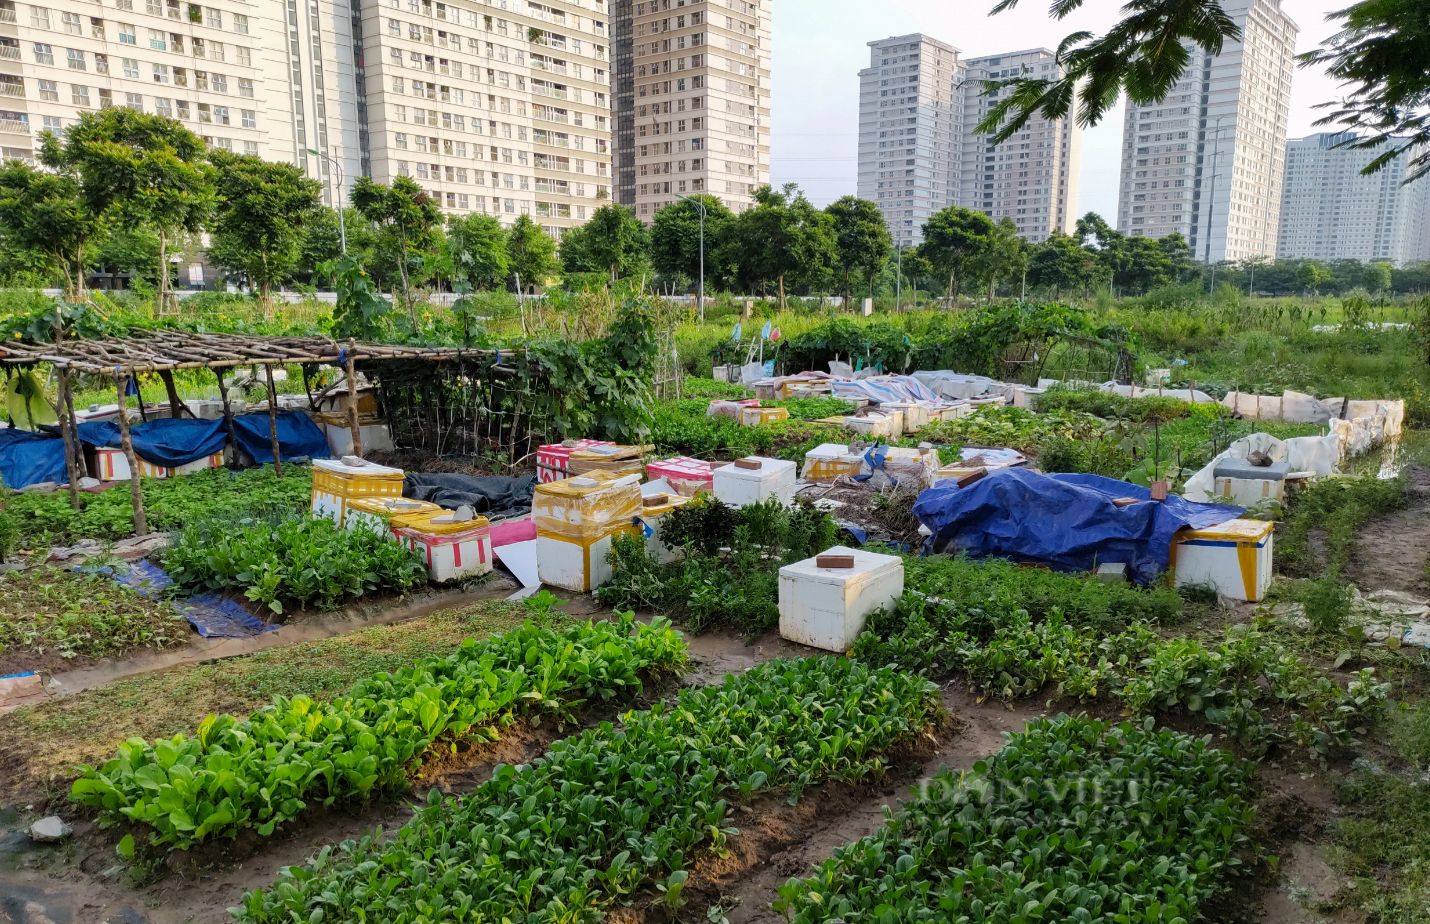 Sau phốt rau sạch rởm, dân chung cư ở Hà Nội phạt cỏ dại, khai hoang cuốc đất trồng rau - Ảnh 1.